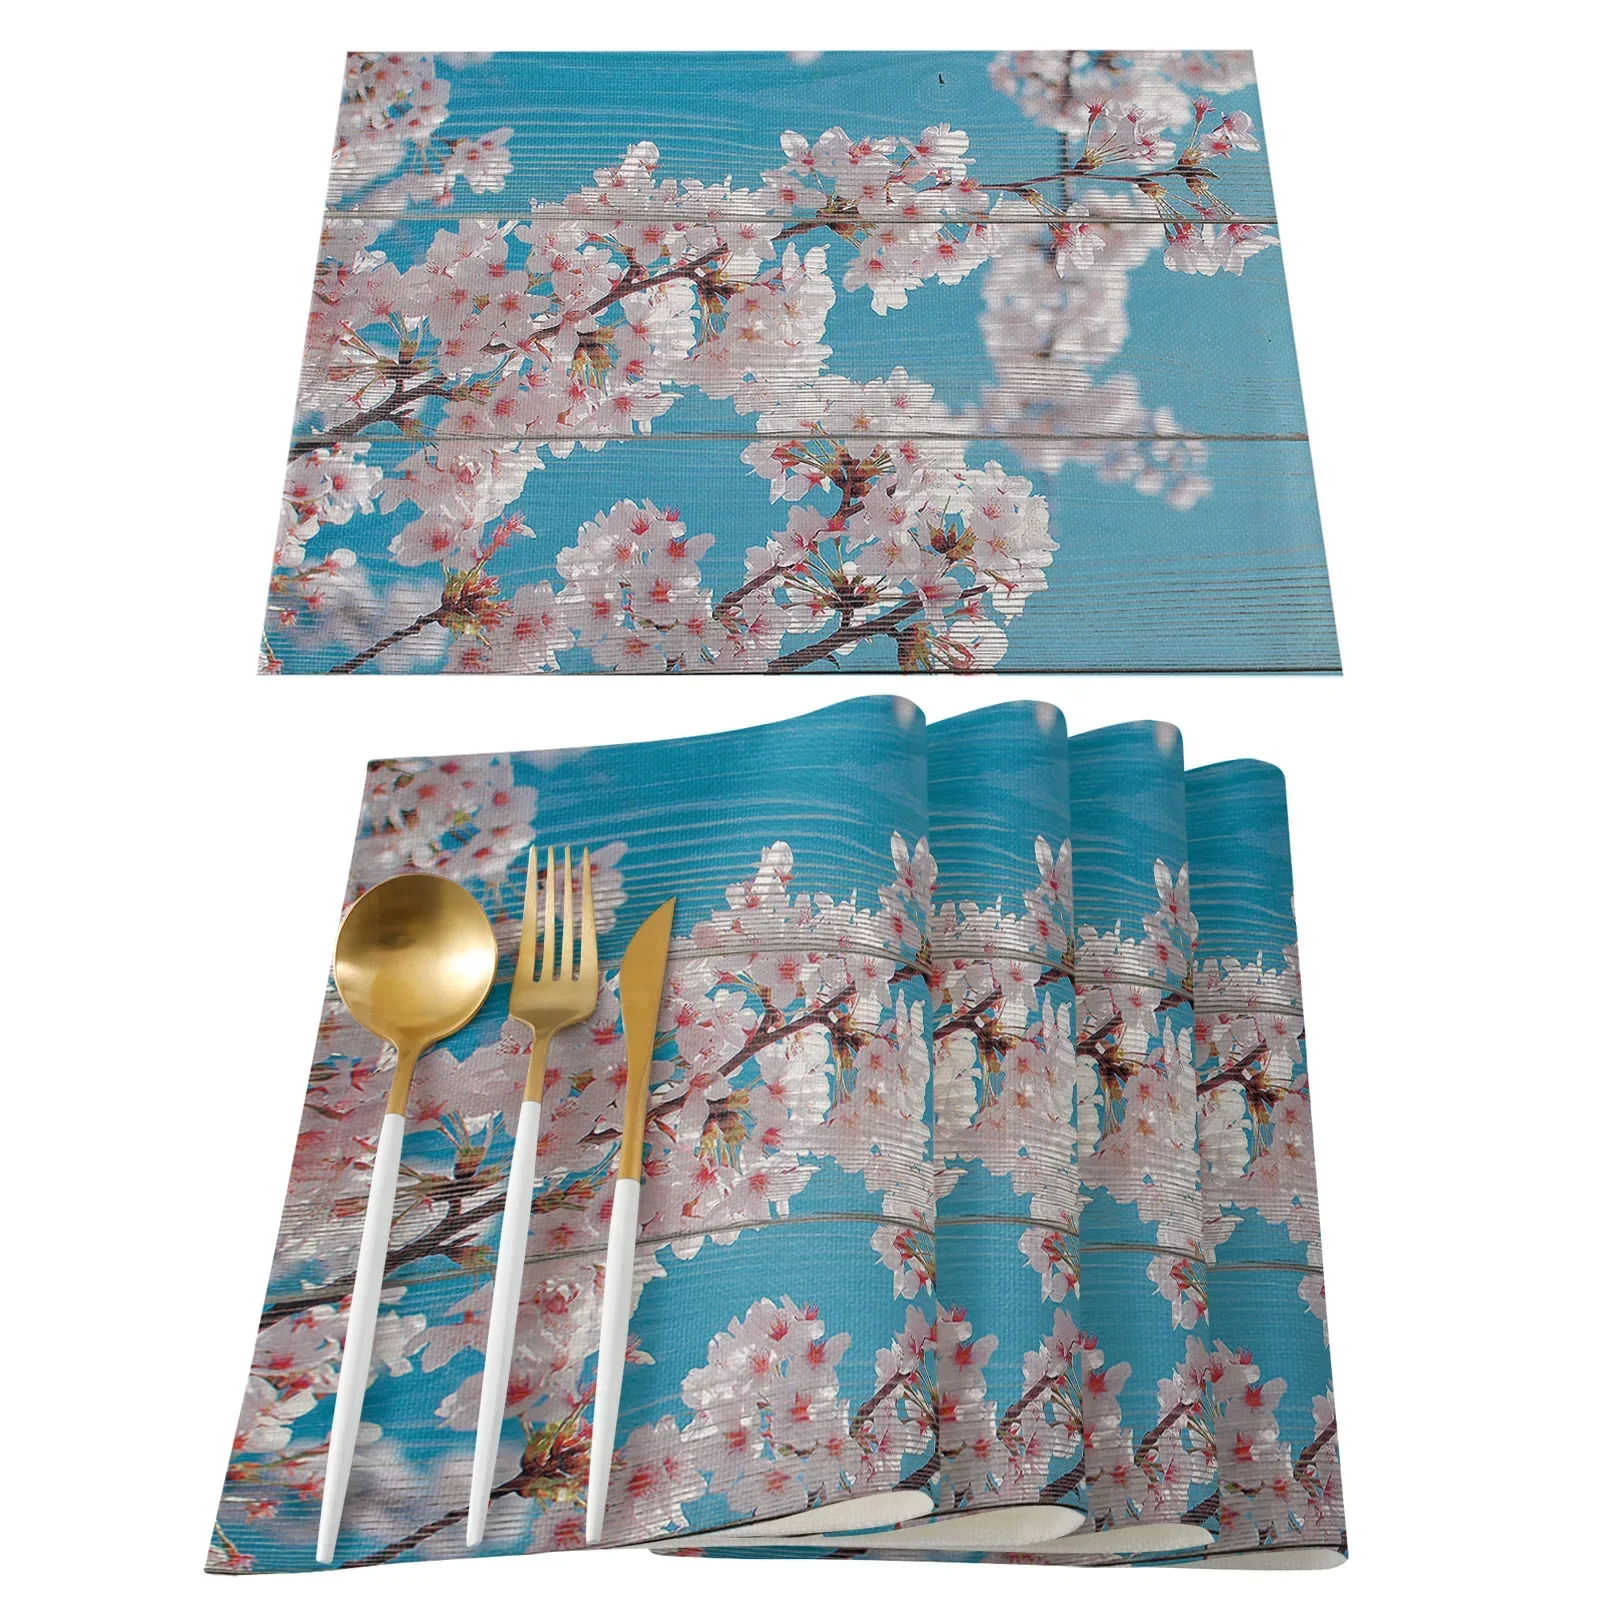 Коврик для стола с рисунком японской вишни Украшение кухни Салфетка для стола Салфетка для свадьбы Обеденные принадлежности Коврик для стола